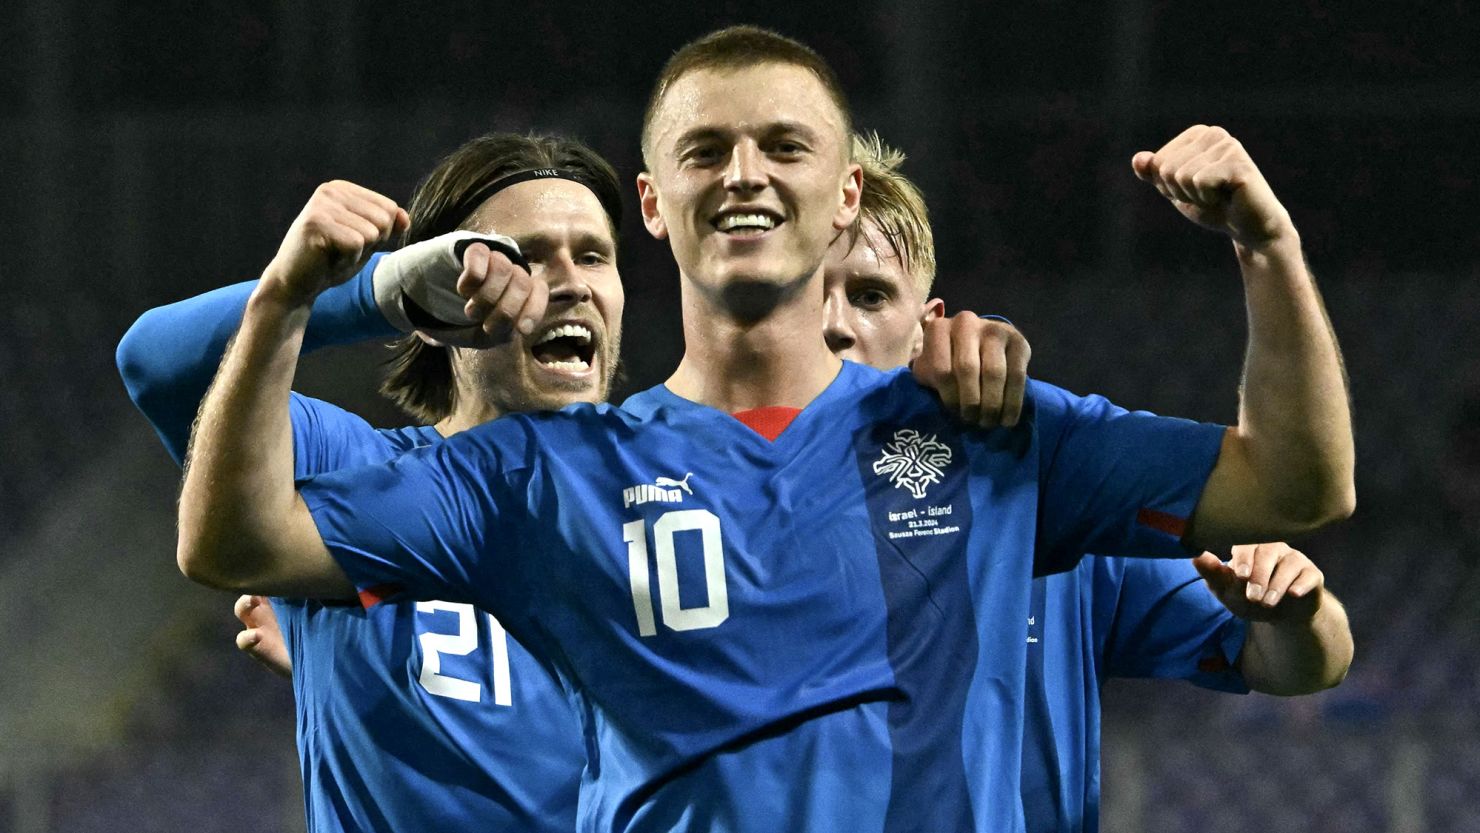 Albert Guðmundsson celebrates after scoring for Iceland.